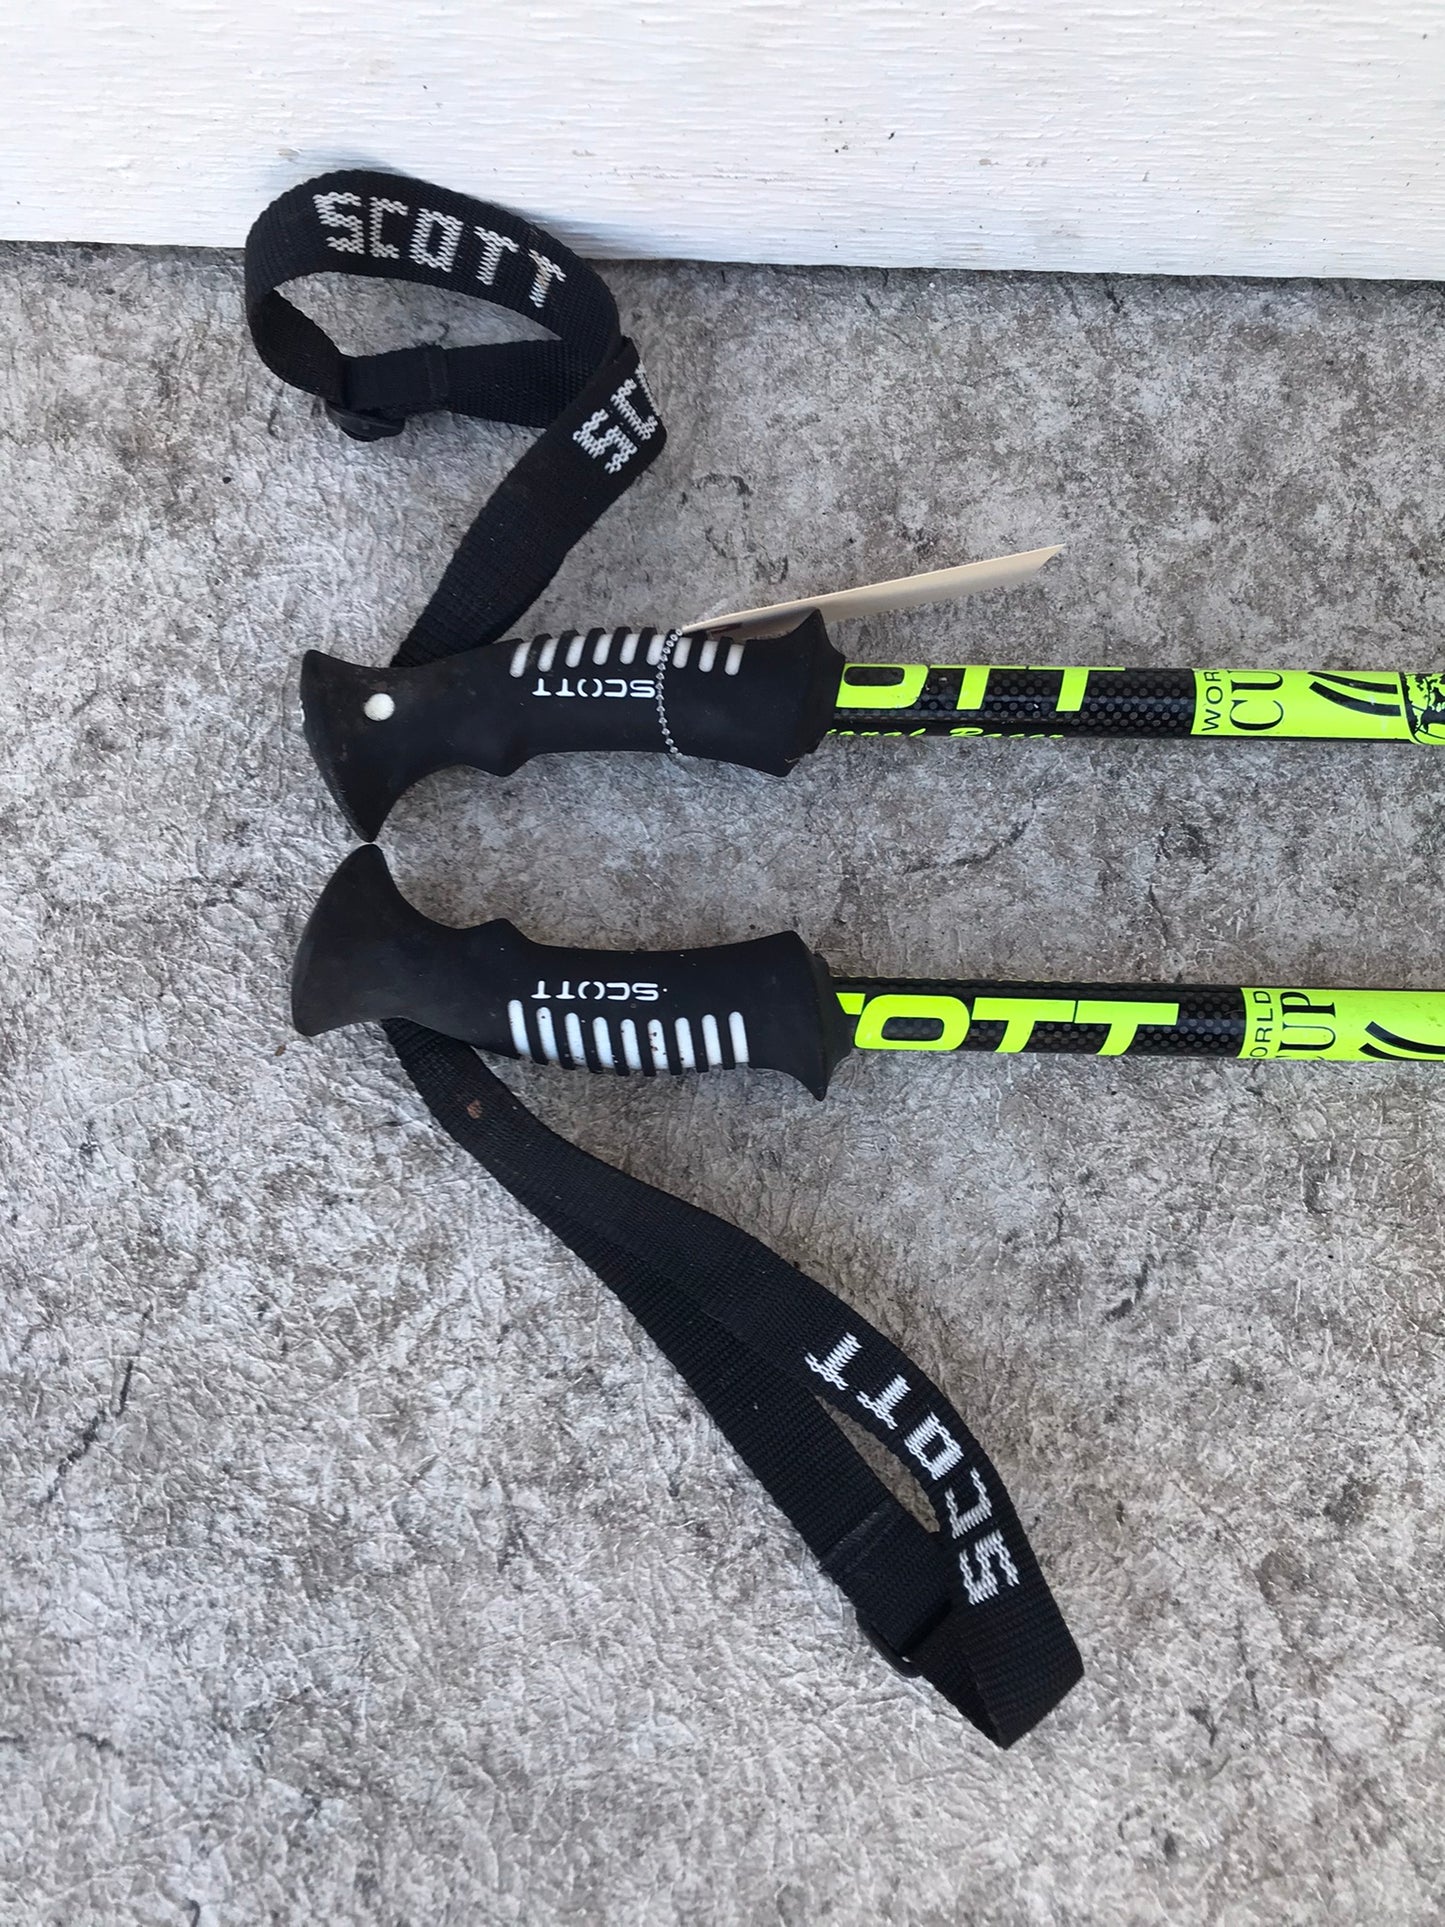 Ski Poles Adult Size 46 inch 115 cm Scott Racing Black Lime Rubber Handles Excellent